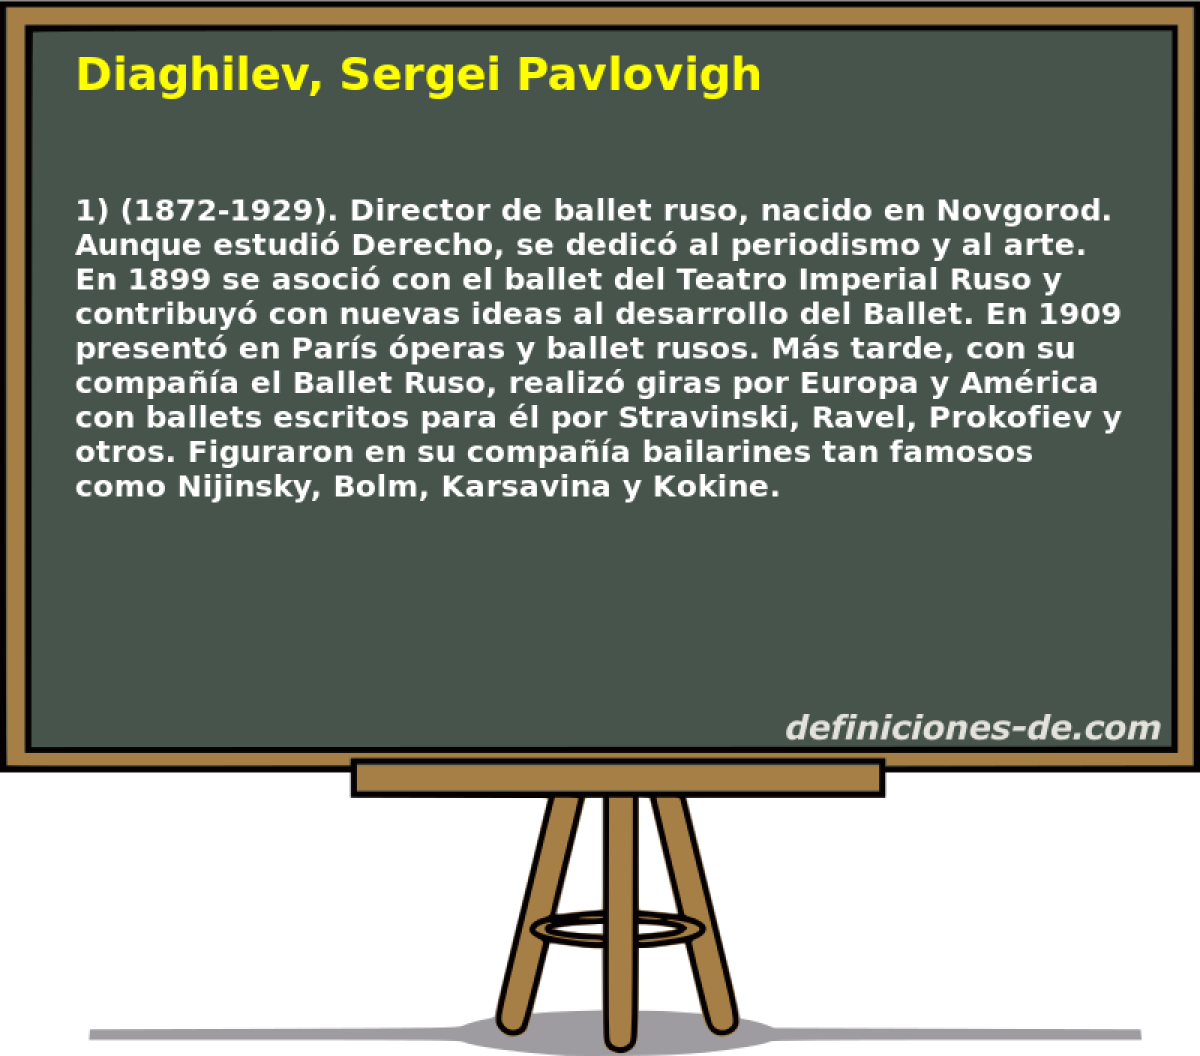 Diaghilev, Sergei Pavlovigh 